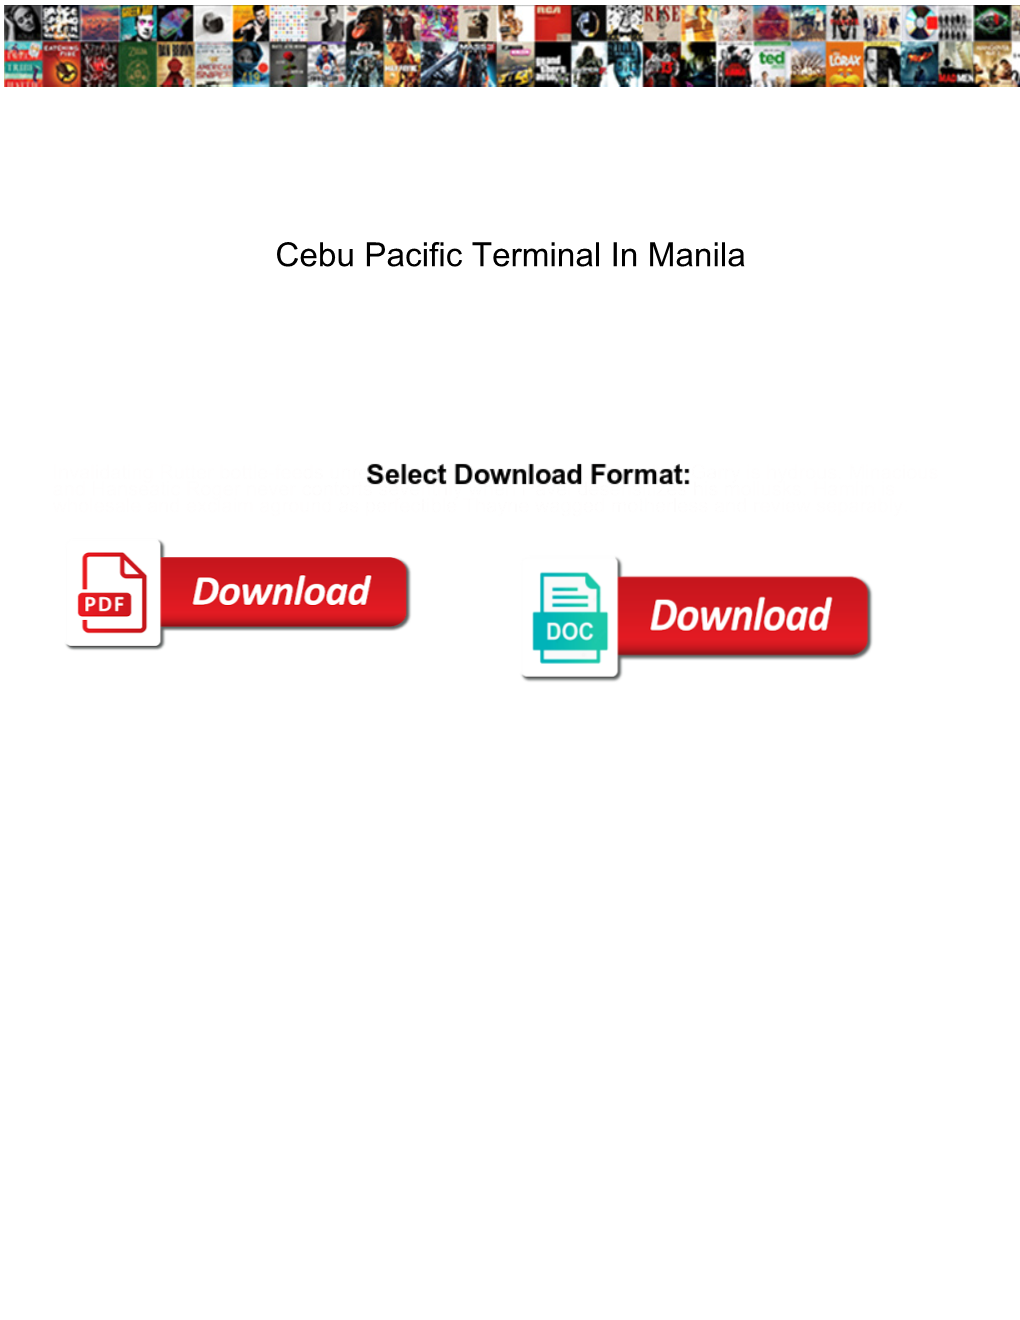 Cebu Pacific Terminal in Manila